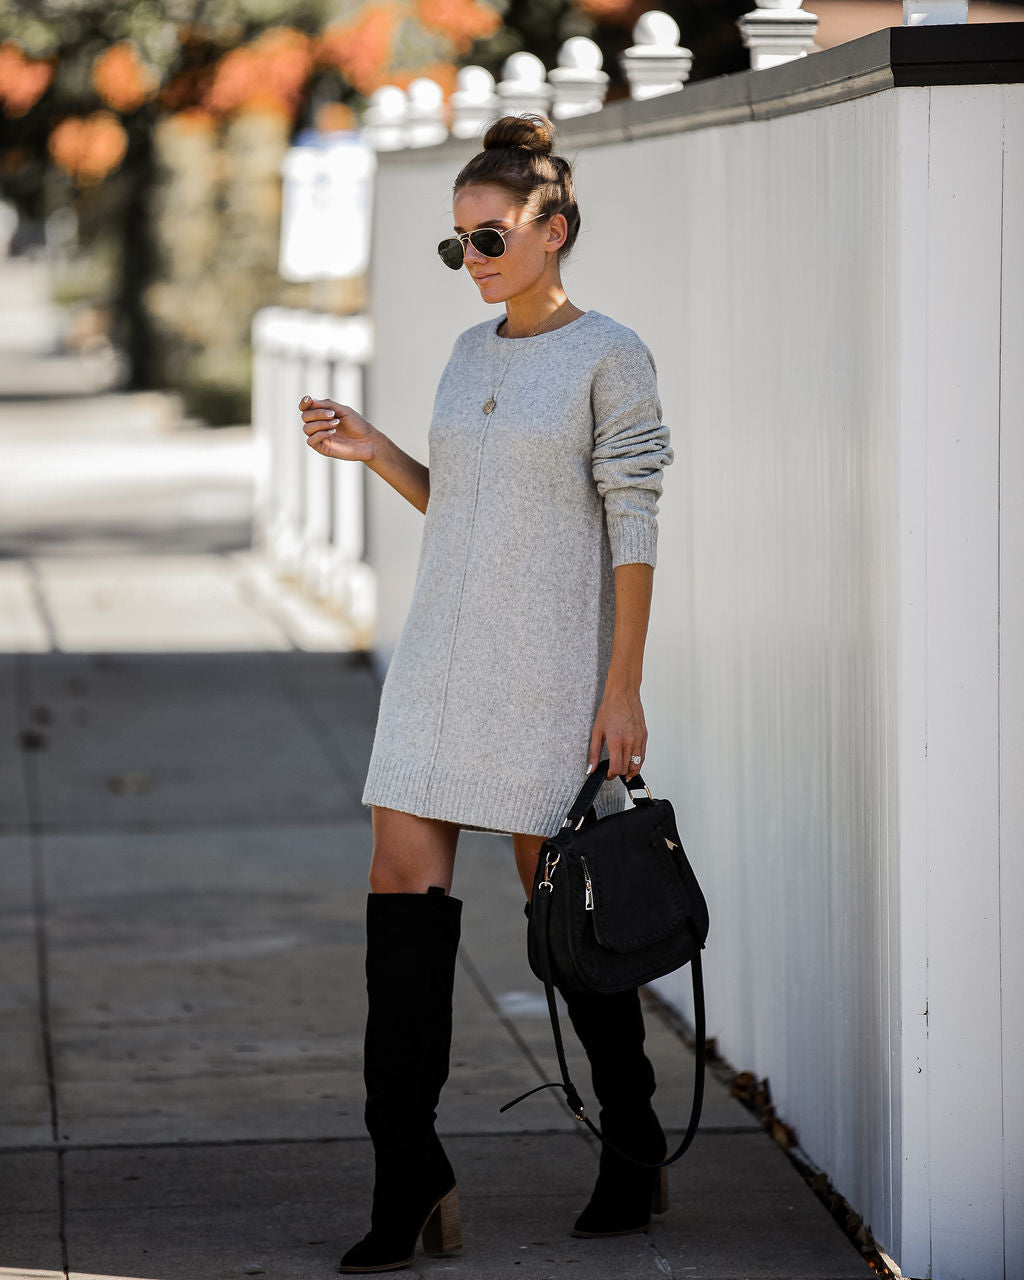 Smoky Mountain Sweater Dress - Grey Ins Street